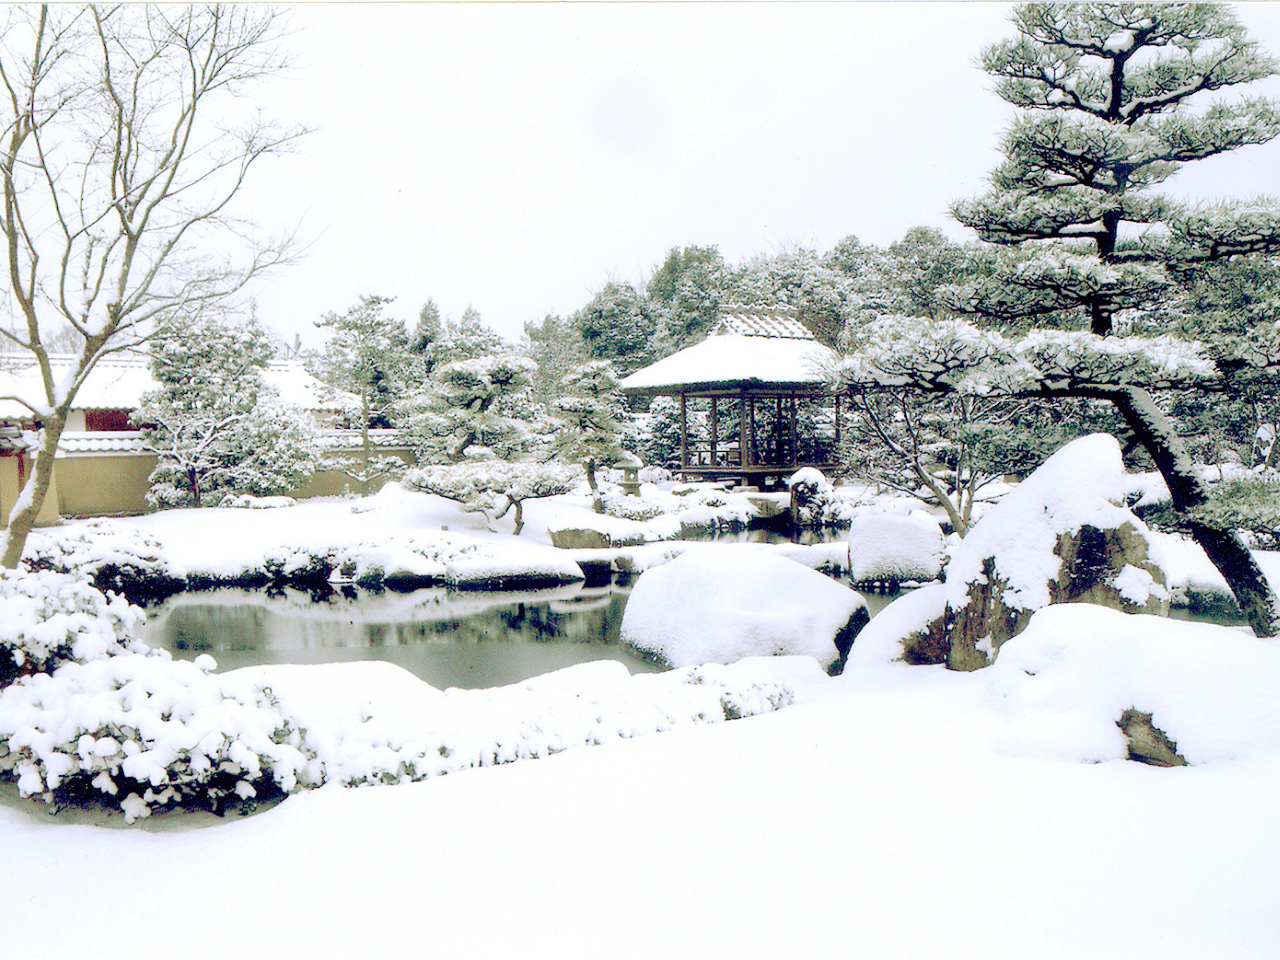 築山池泉の庭